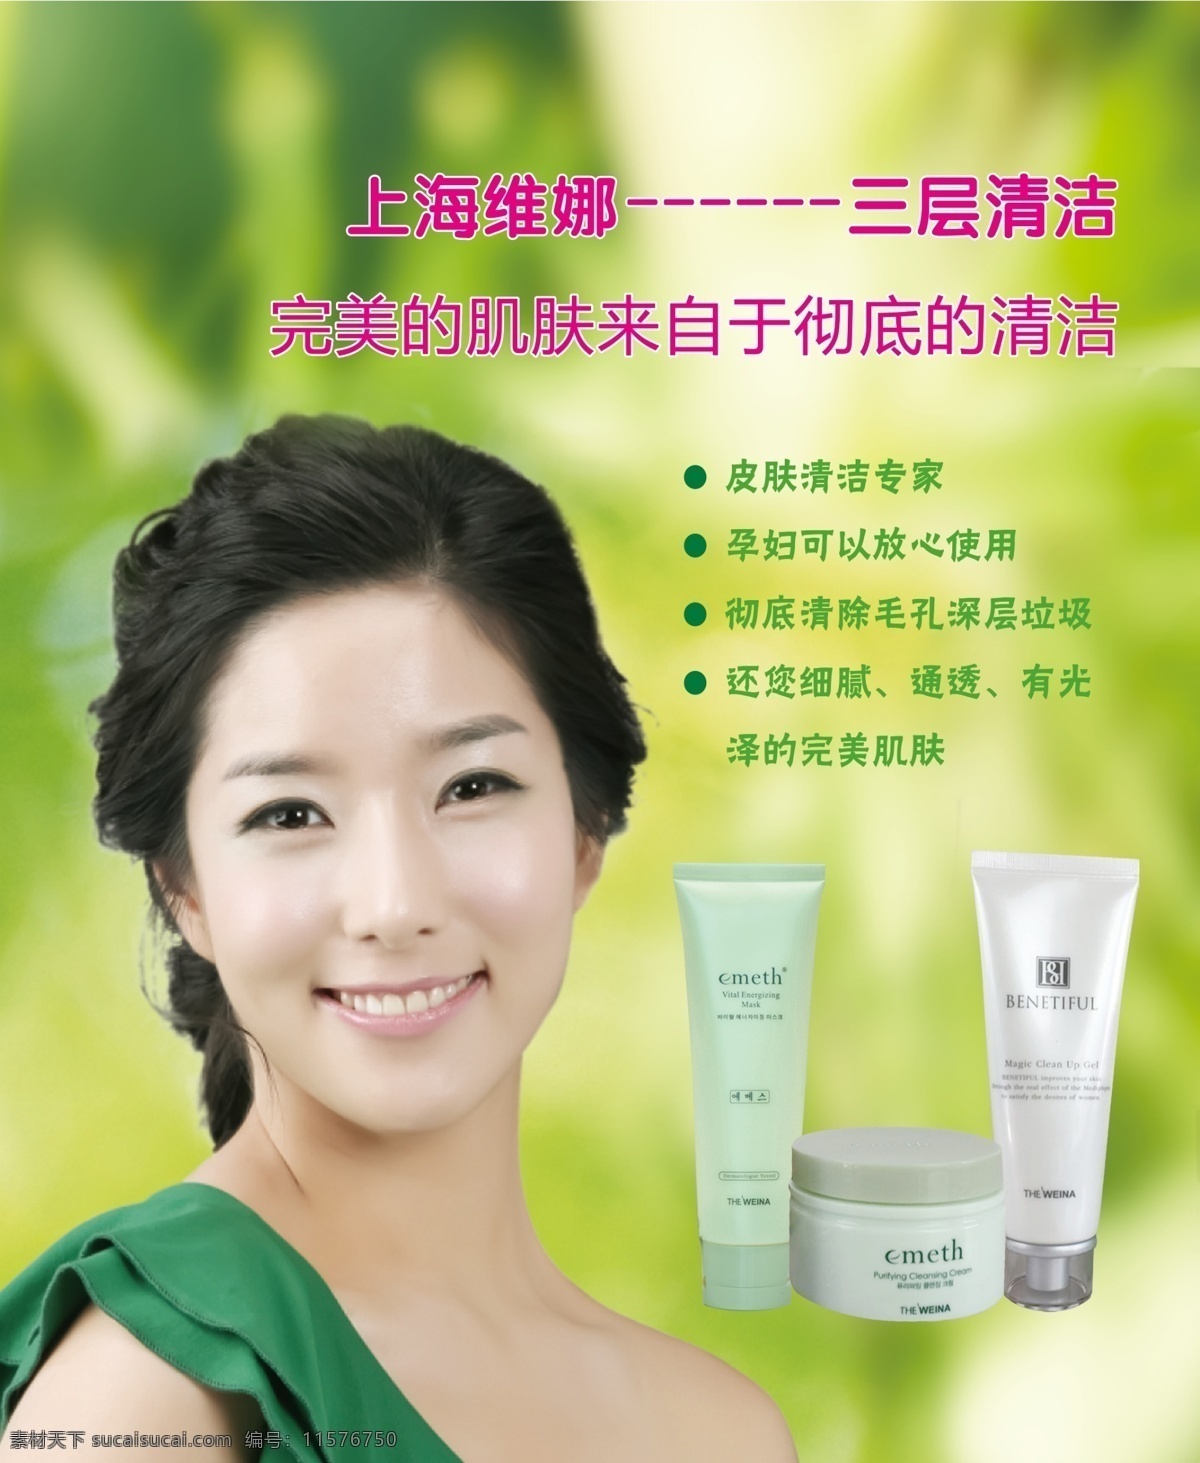 维娜图片 韩国维娜 上海维娜 维娜化妆品 维娜海报 维娜产品介绍 化妆品 脸部护理